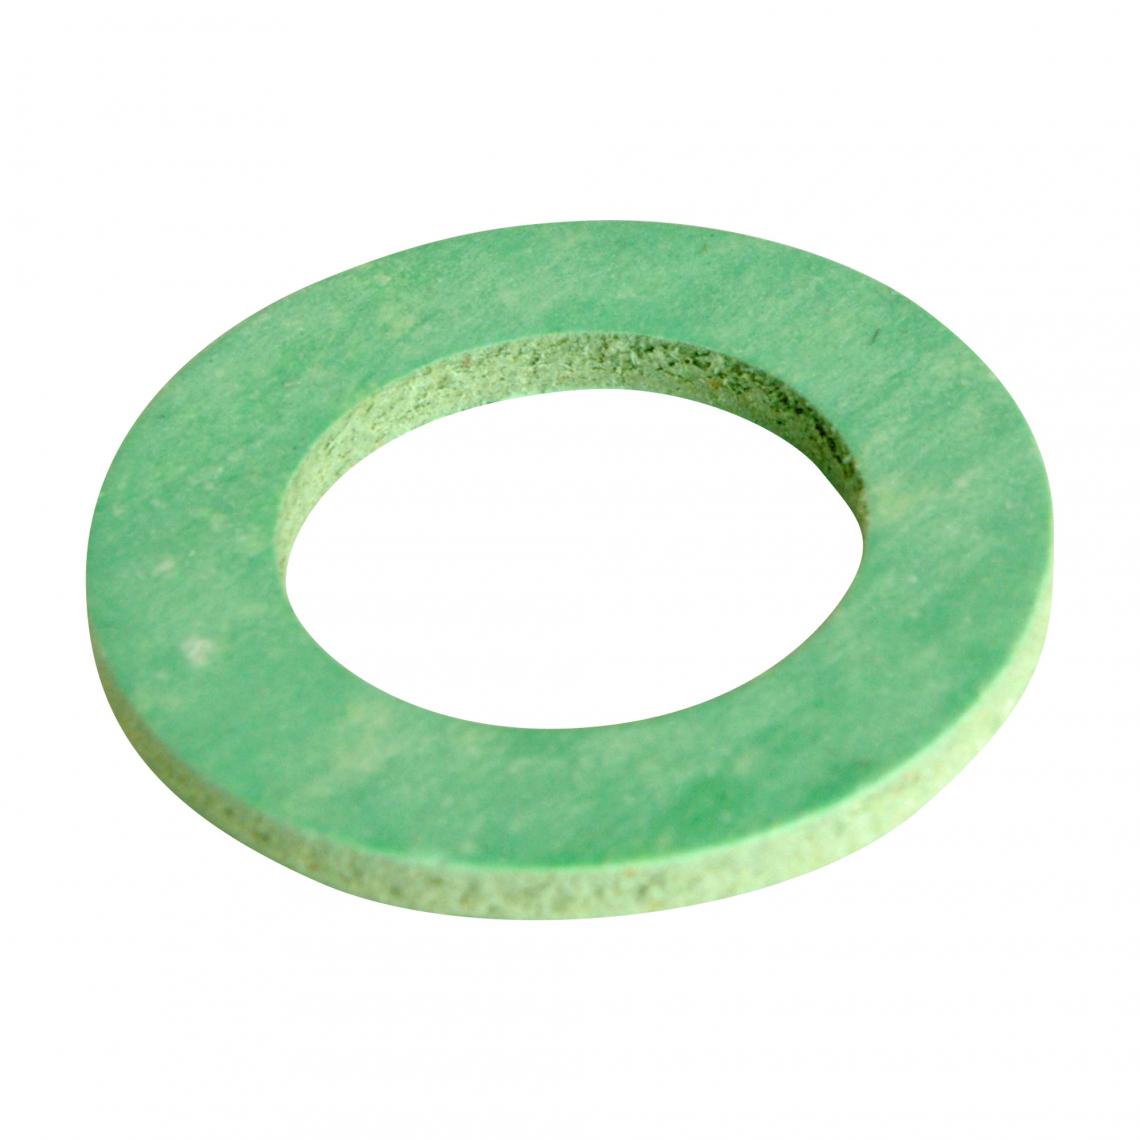 Somatherm For You - Lot de 10 joints fibre vert en 20/27 - Mastic, silicone, joint